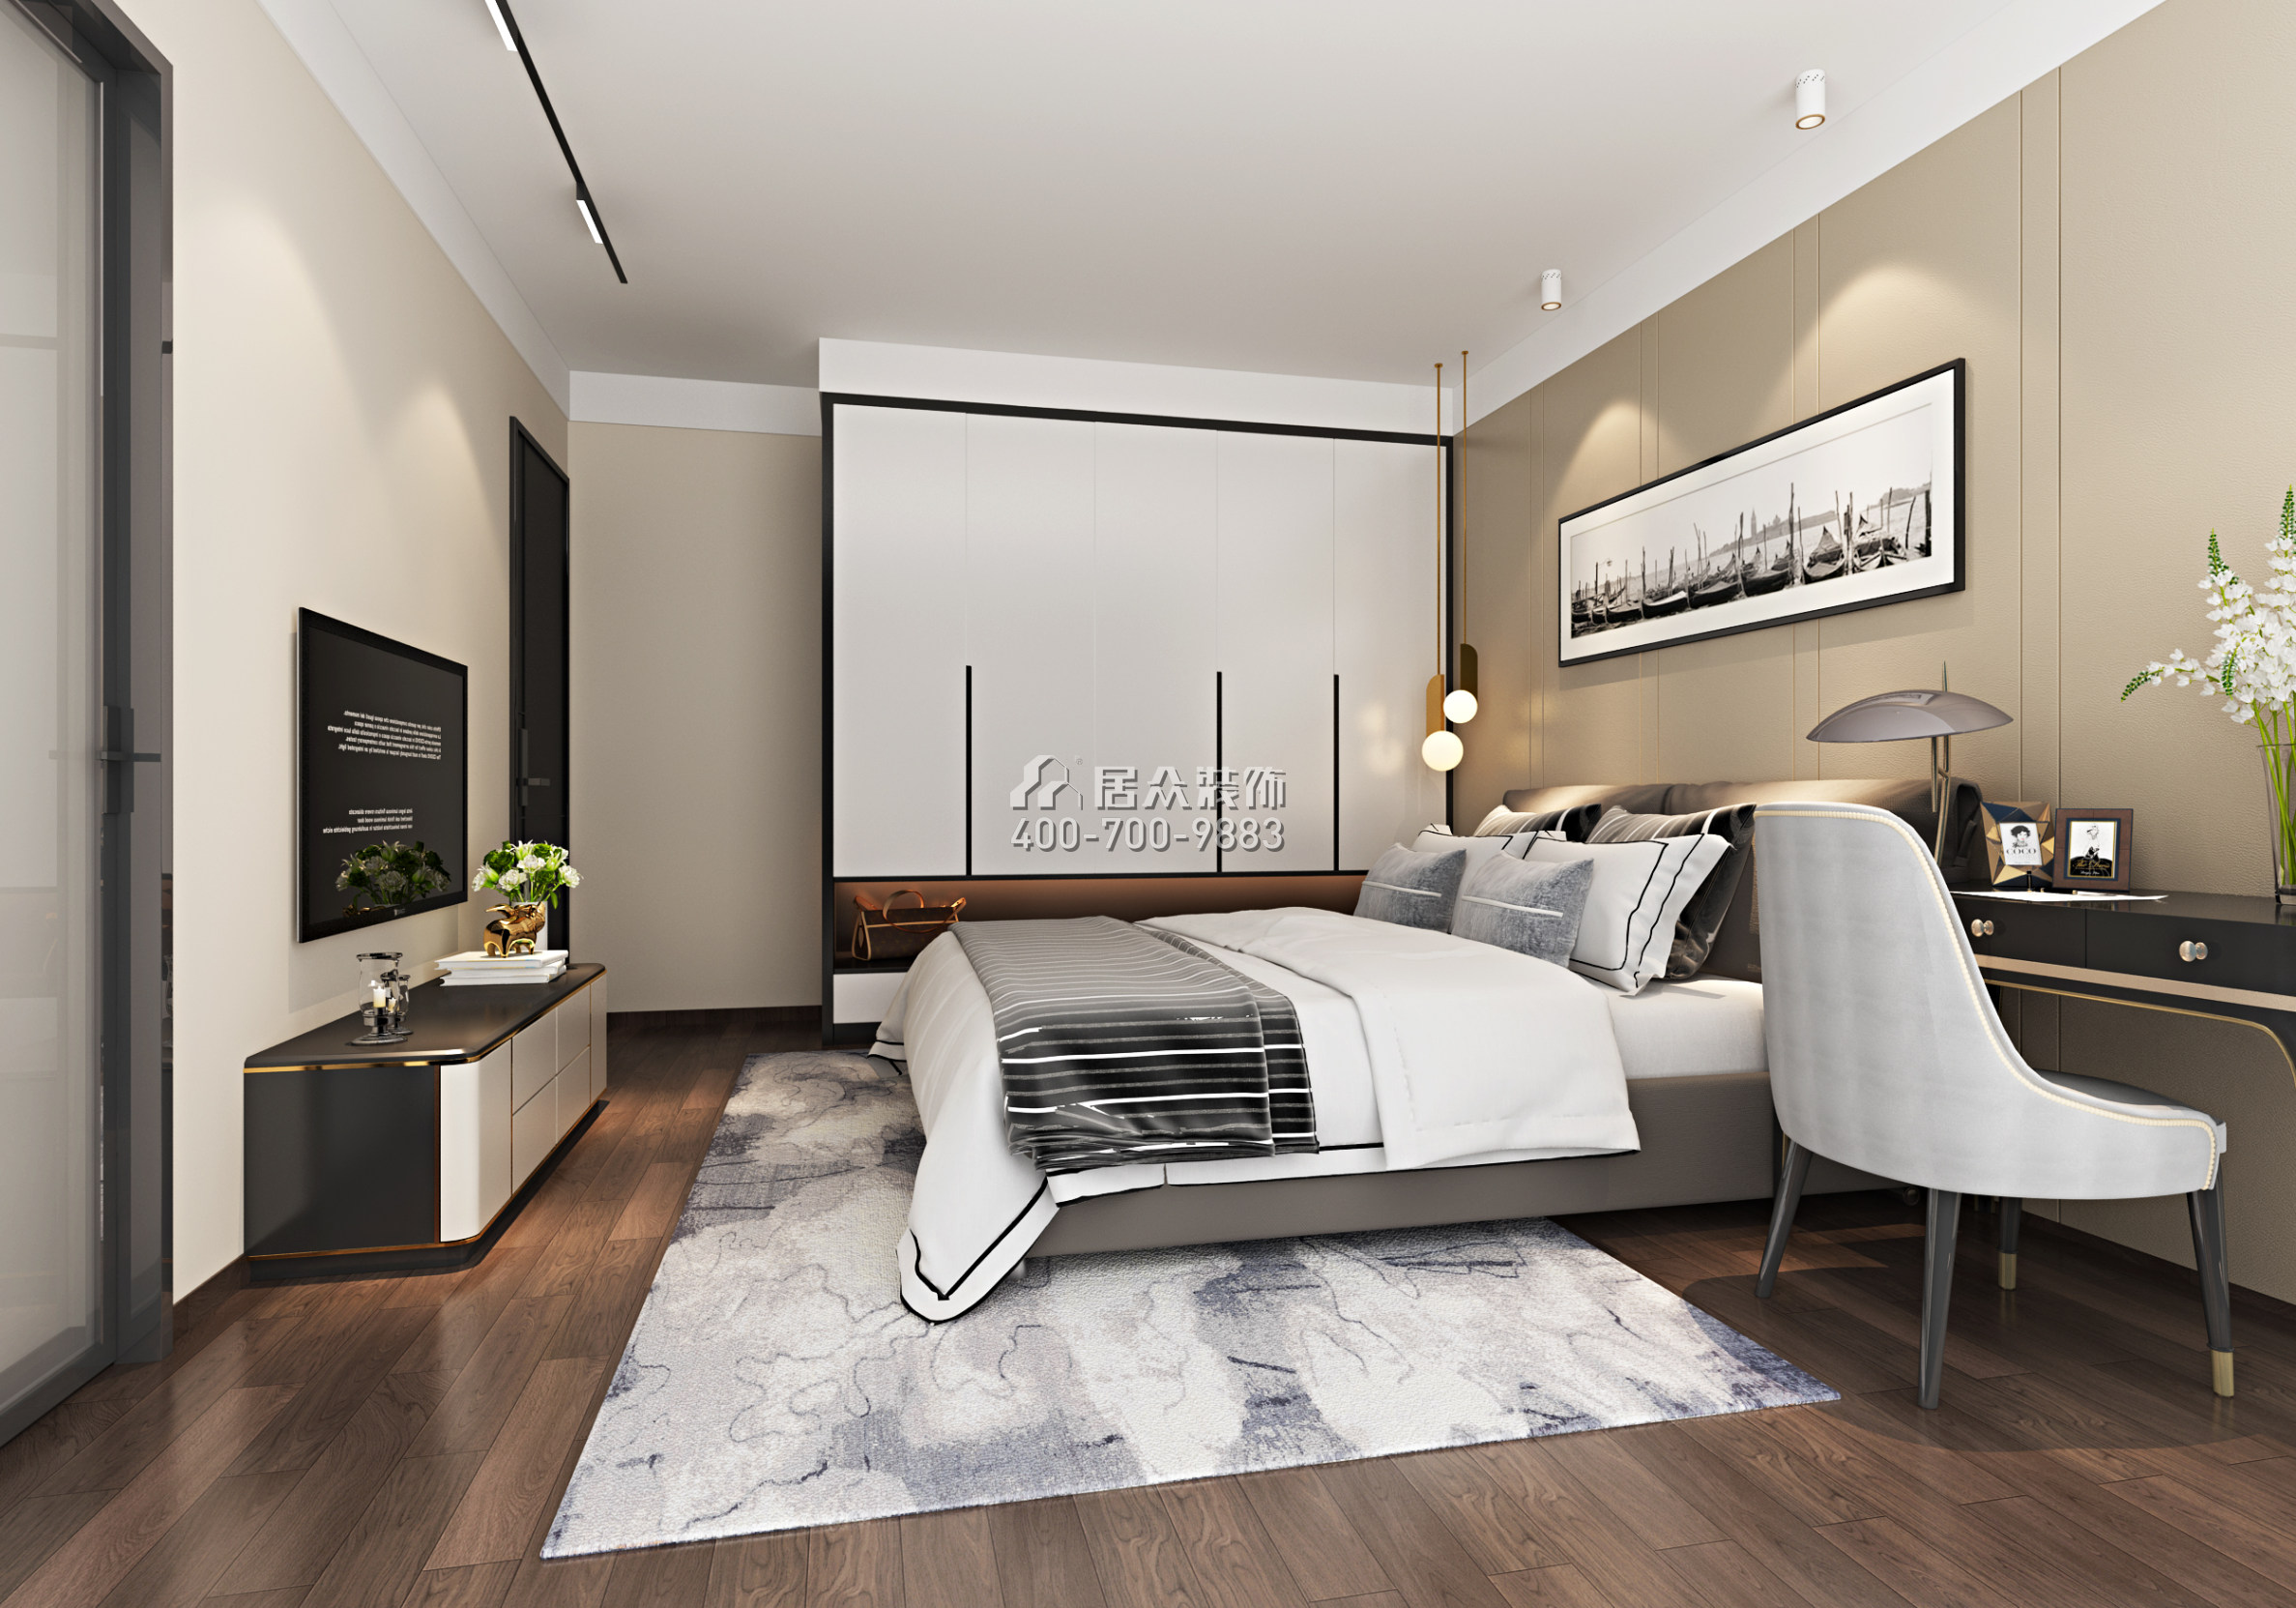 丽景城137平方米现代简约风格复式户型卧室装修效果图